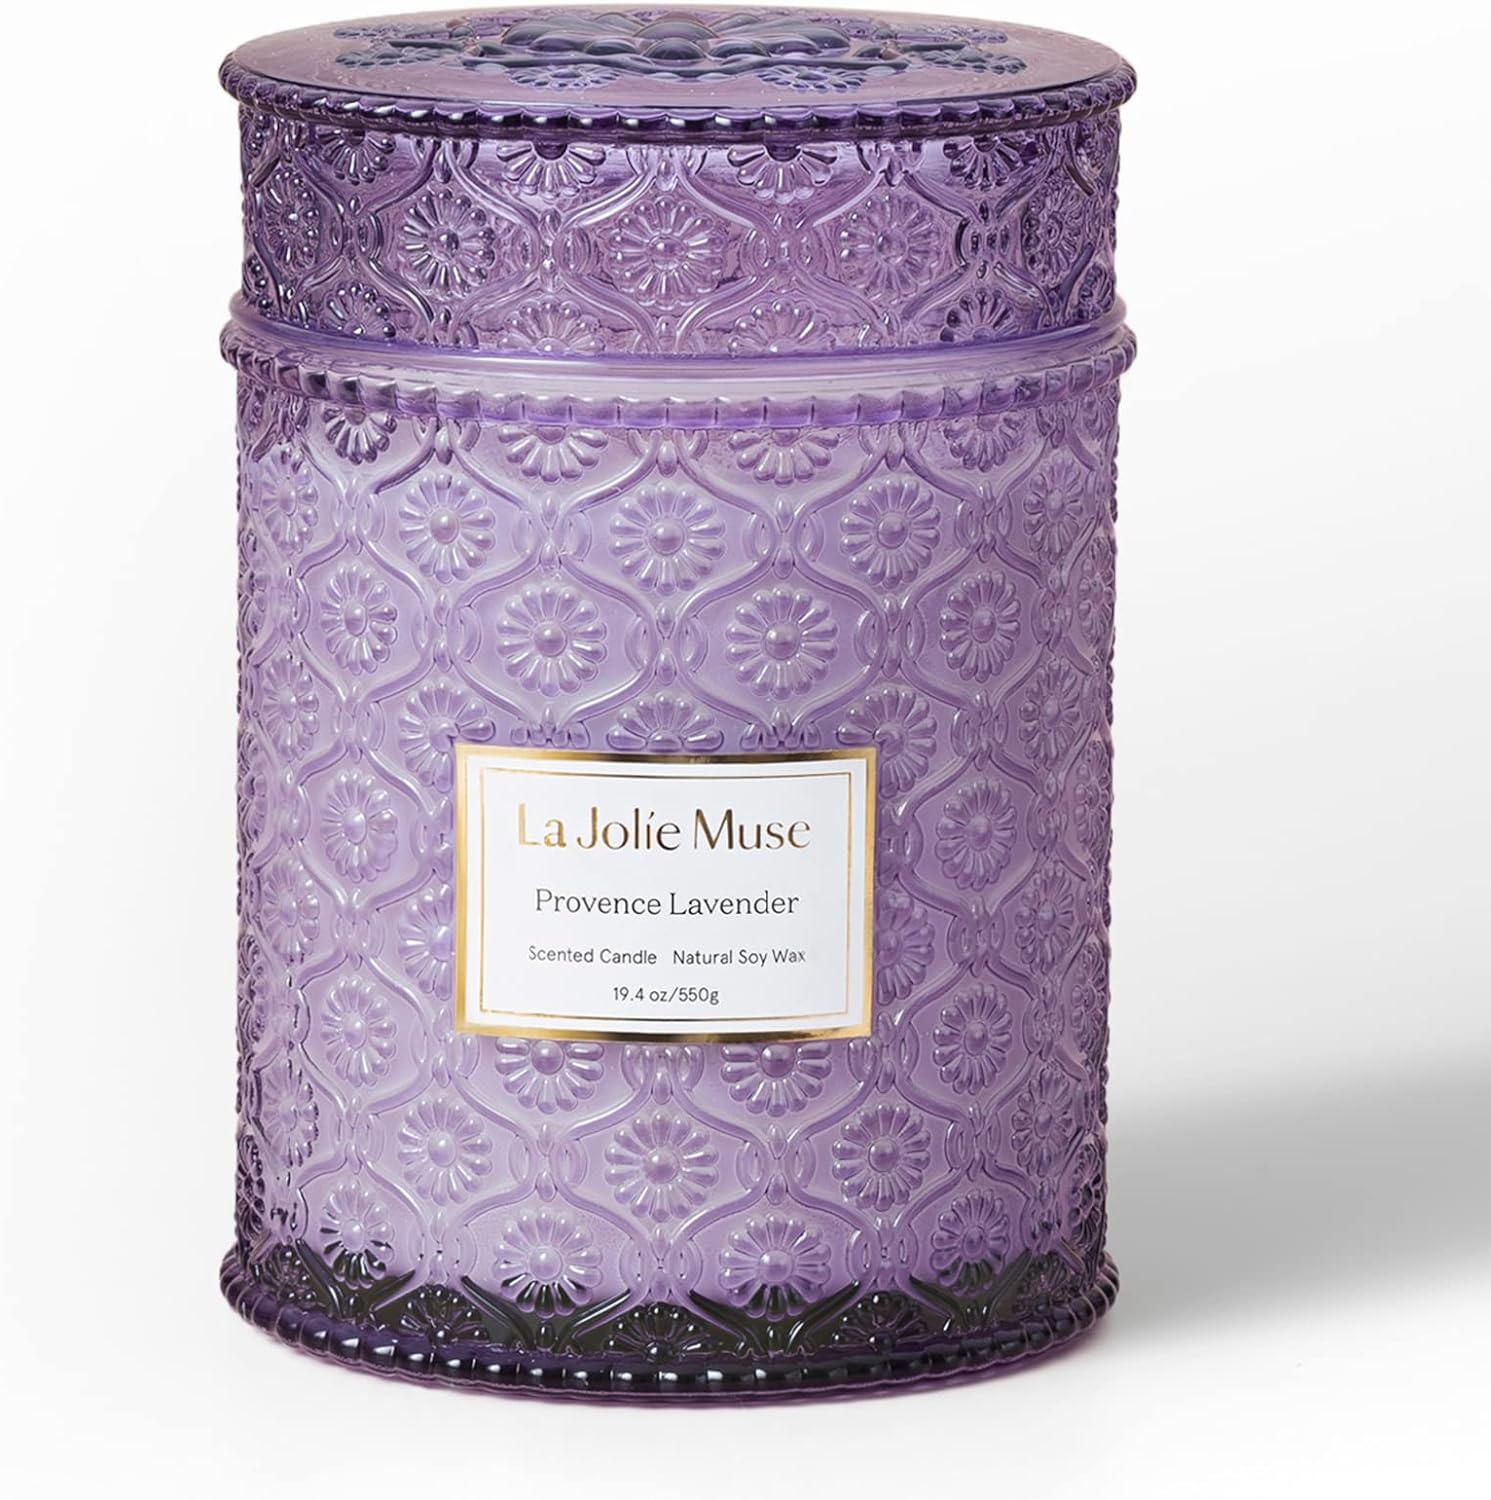 LA JOLIE MUSE Lavender Candle Review